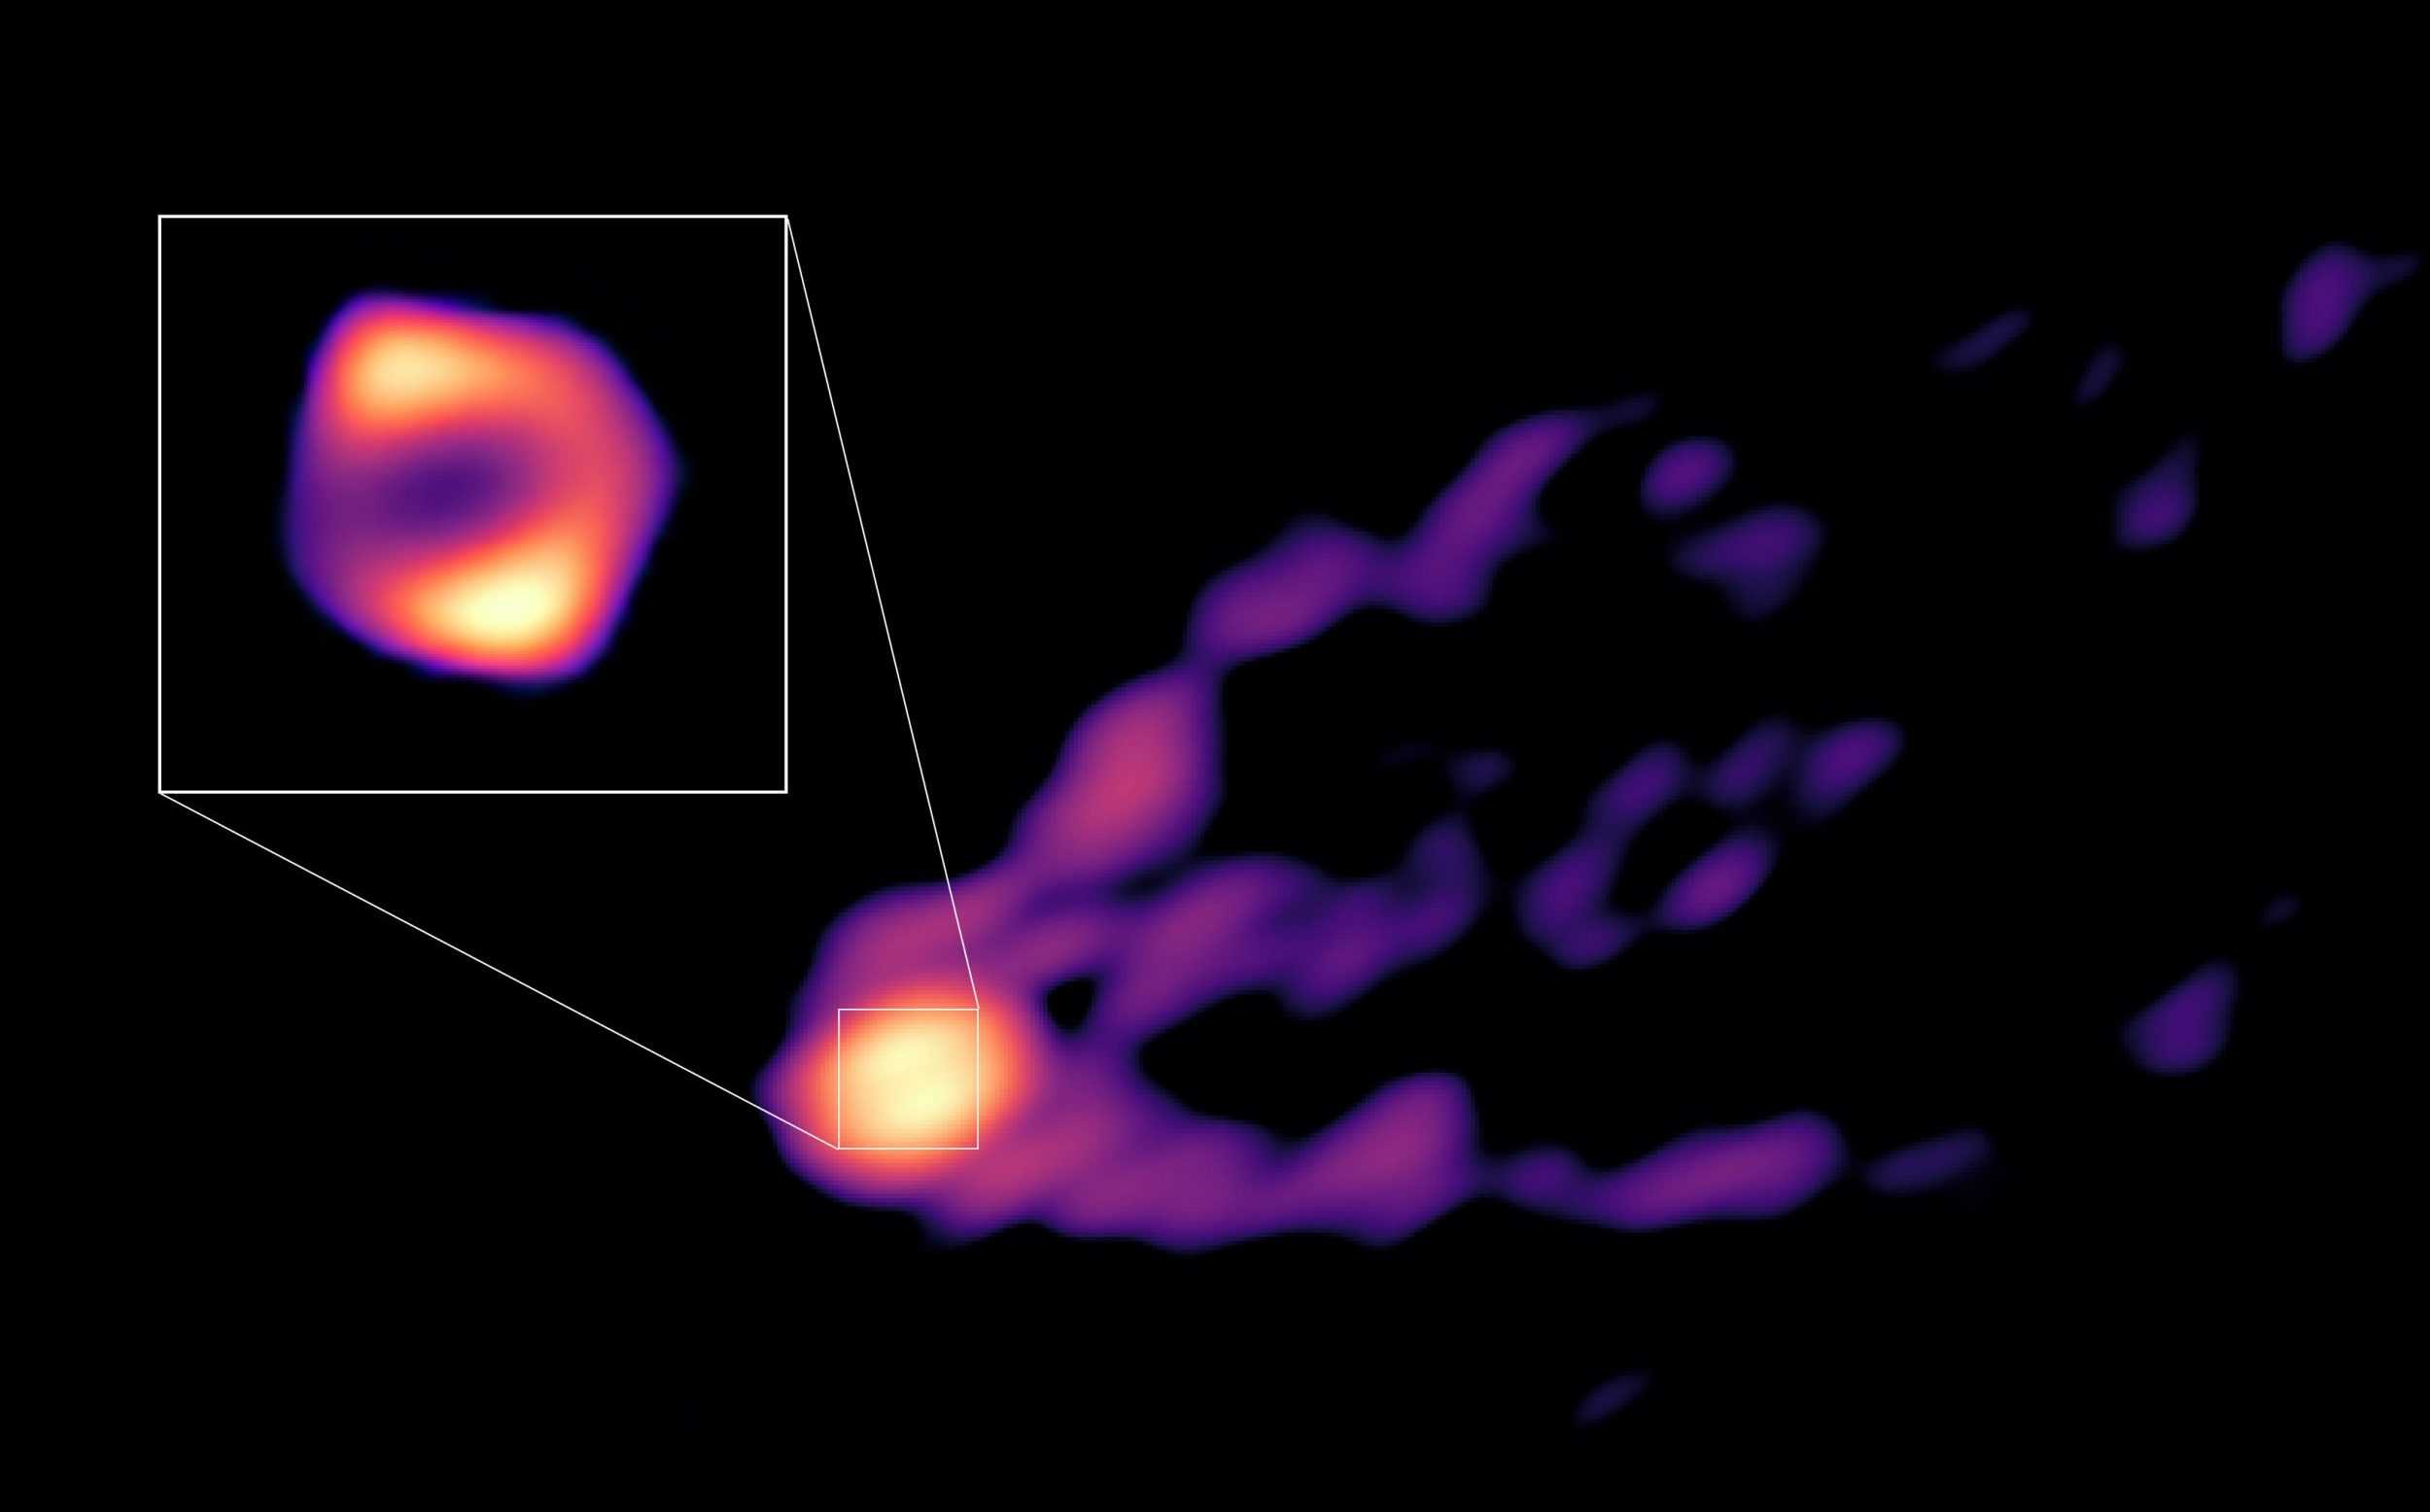 В черной дыре галактики Messier 87 обнаружили «выстрел» джета